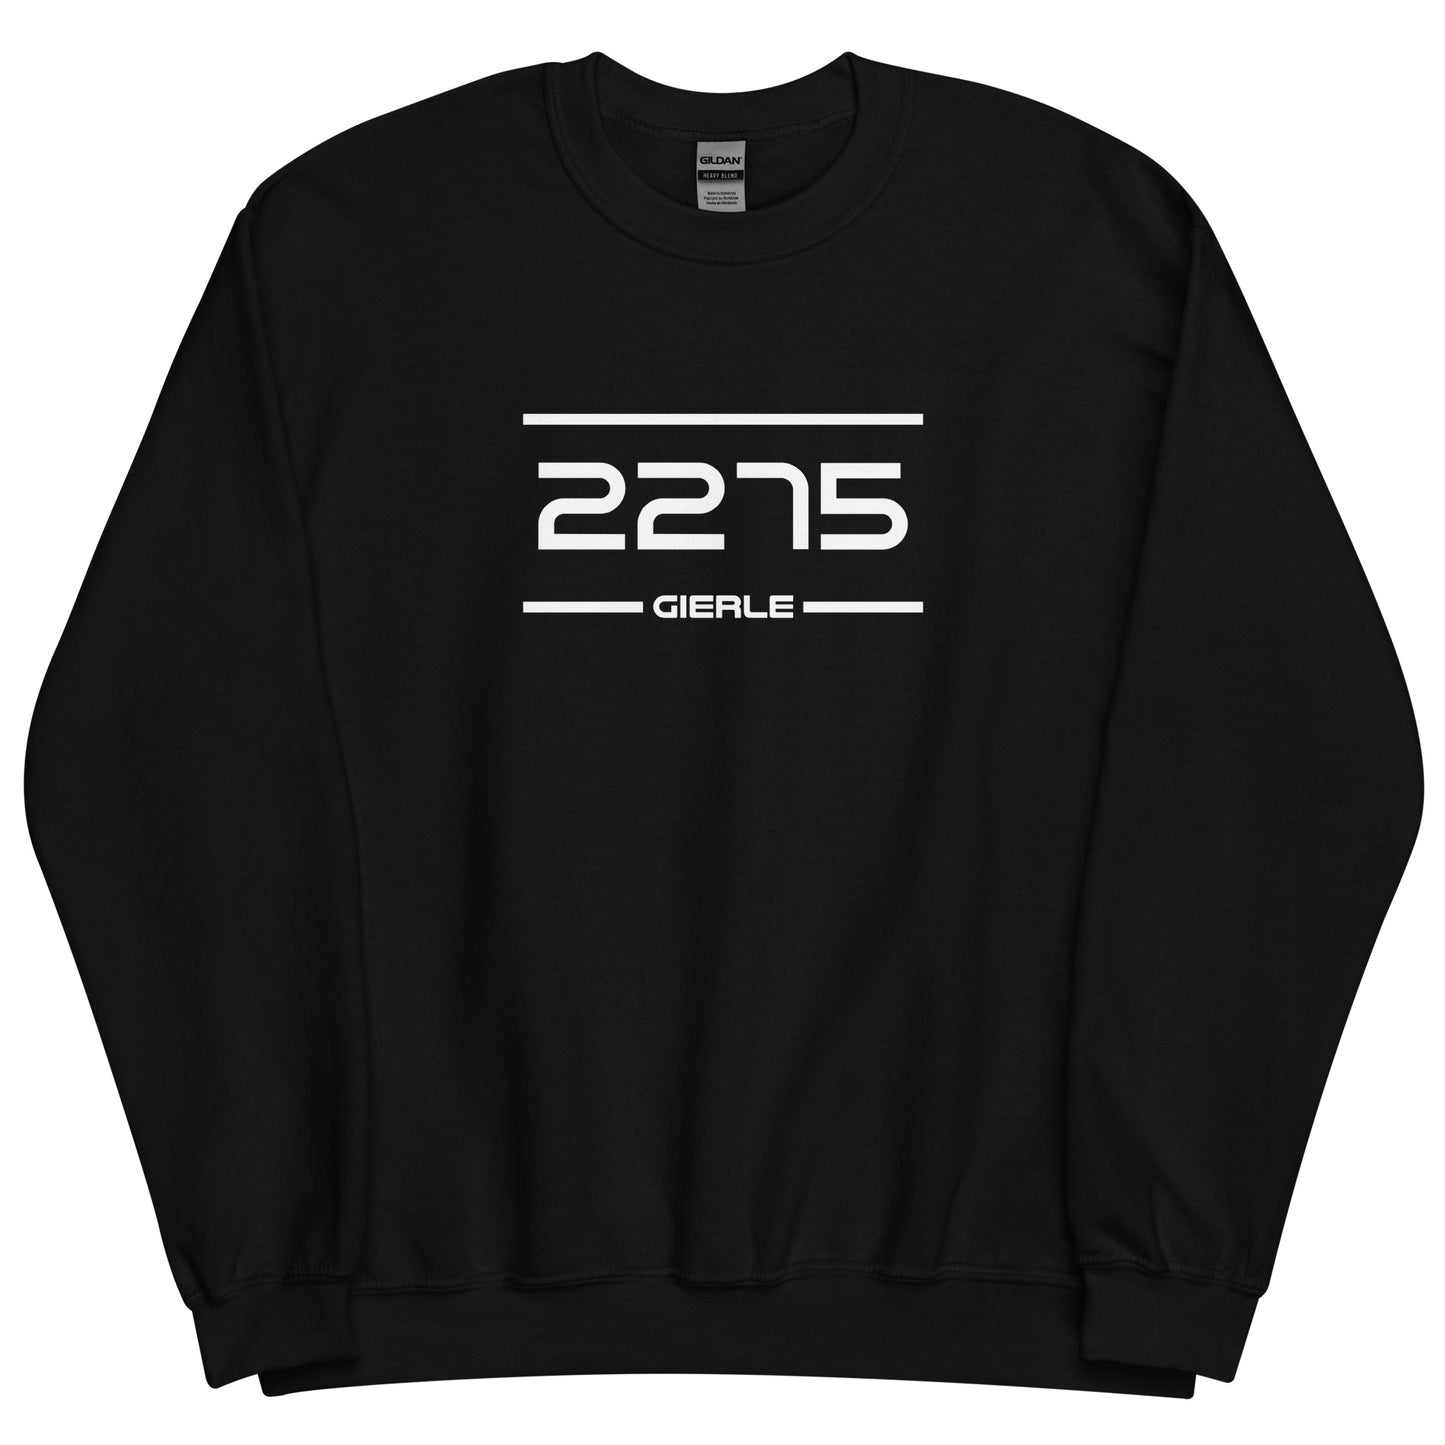 Sweater - 2275 - Gierle (M/V)